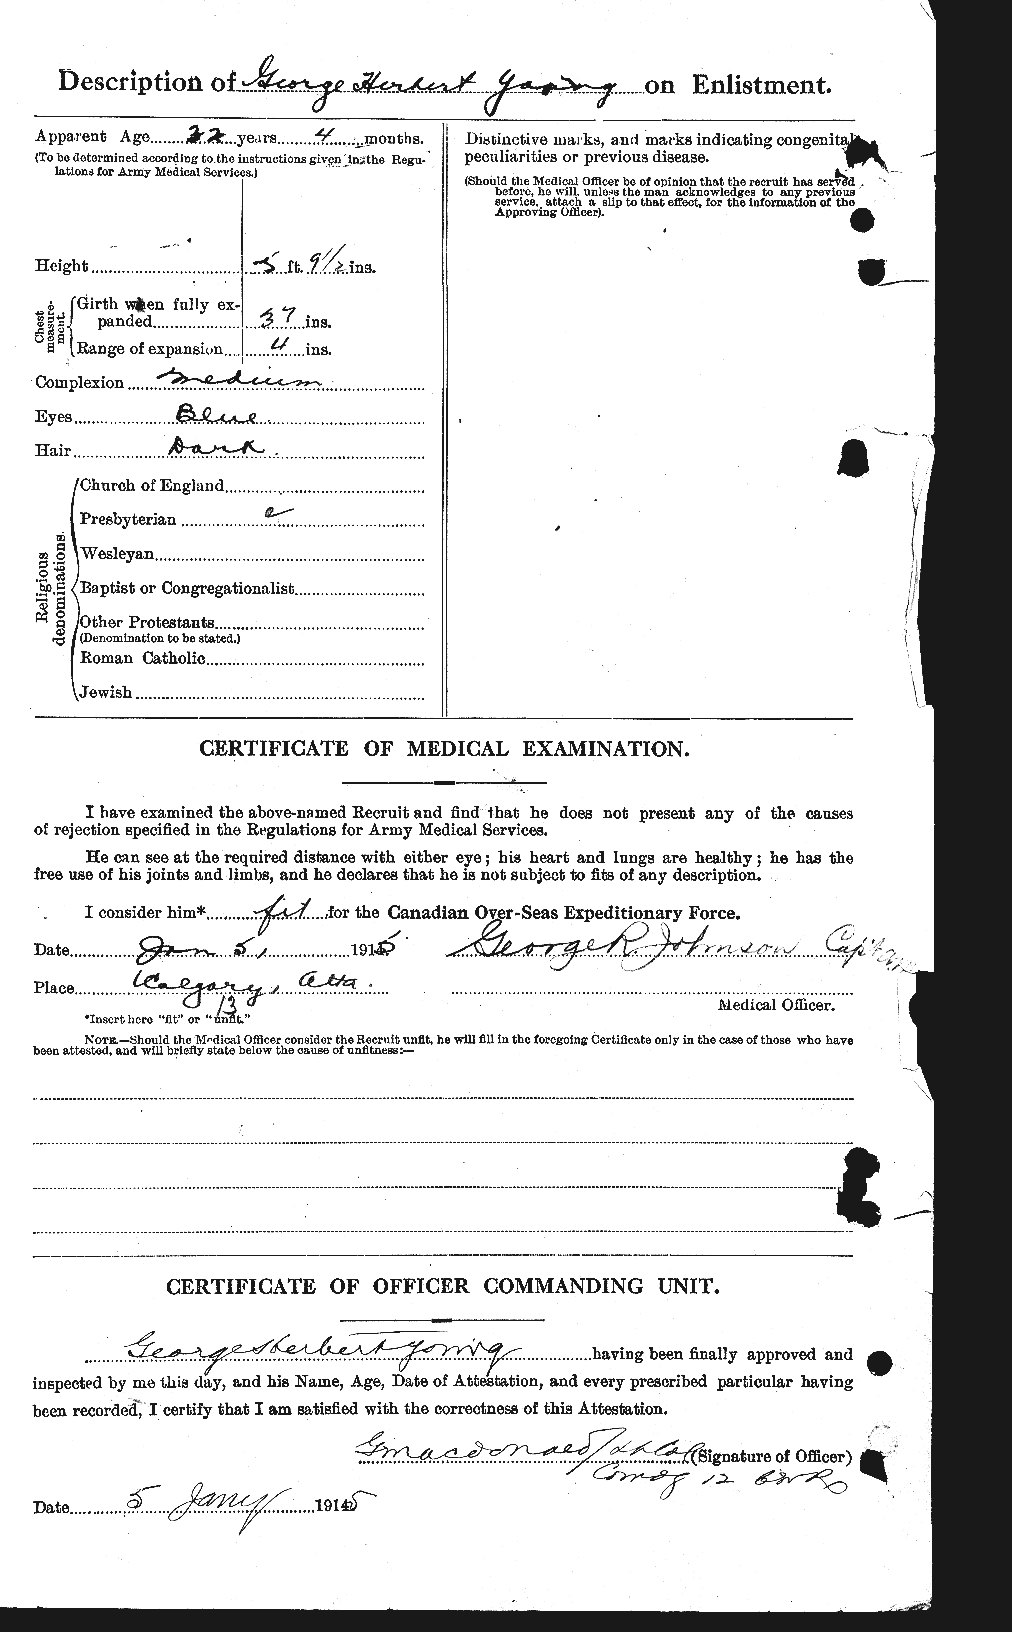 Dossiers du Personnel de la Première Guerre mondiale - CEC 688444b